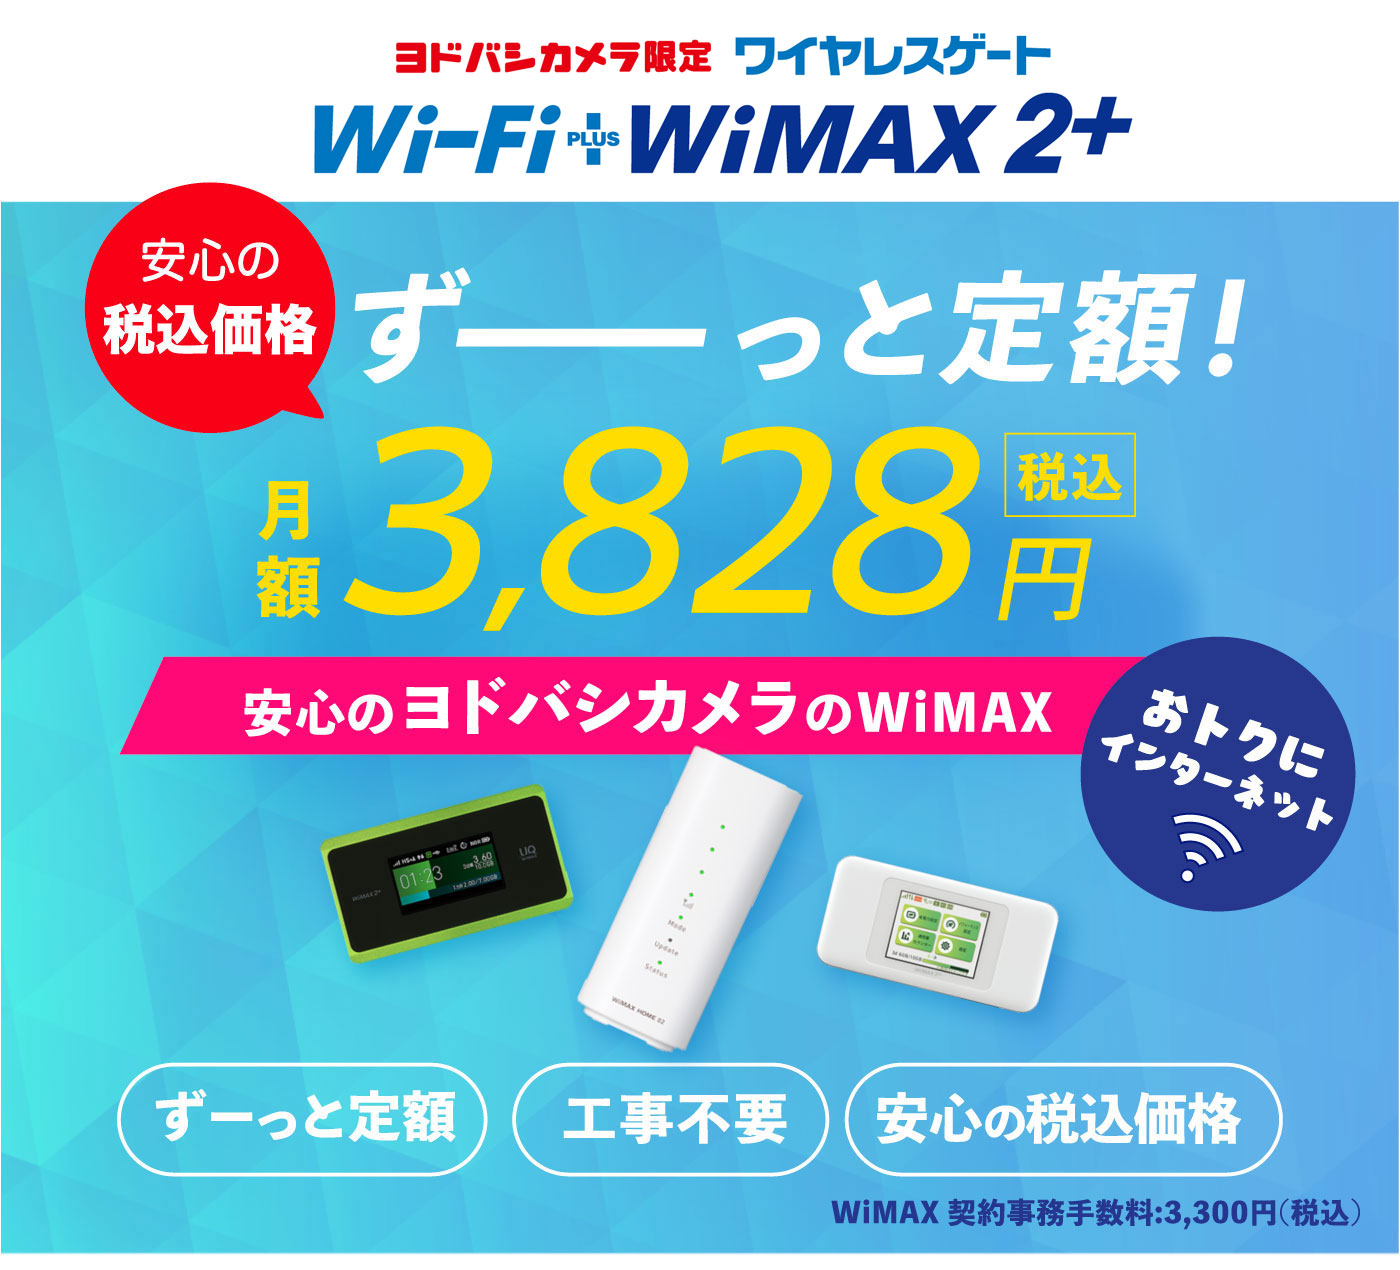 ヨドバシwimax 公式 Wimaxがずっと定額で安い